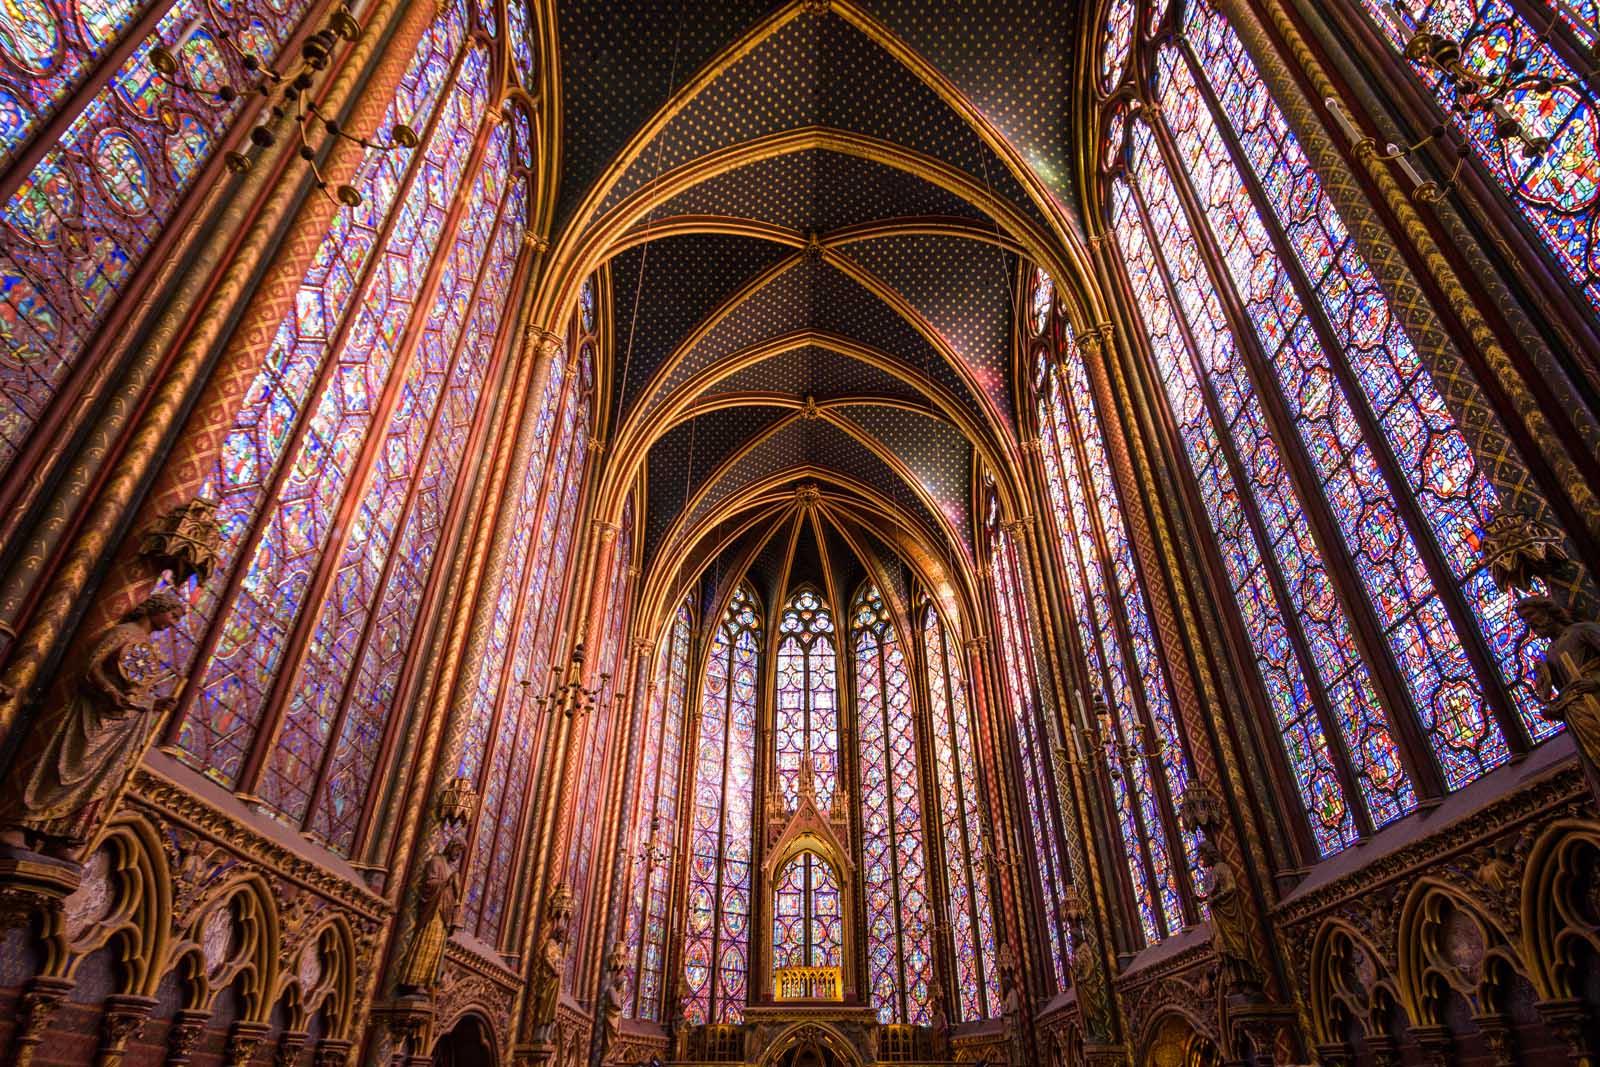 Interior of Sainte-Chapelle in Paris